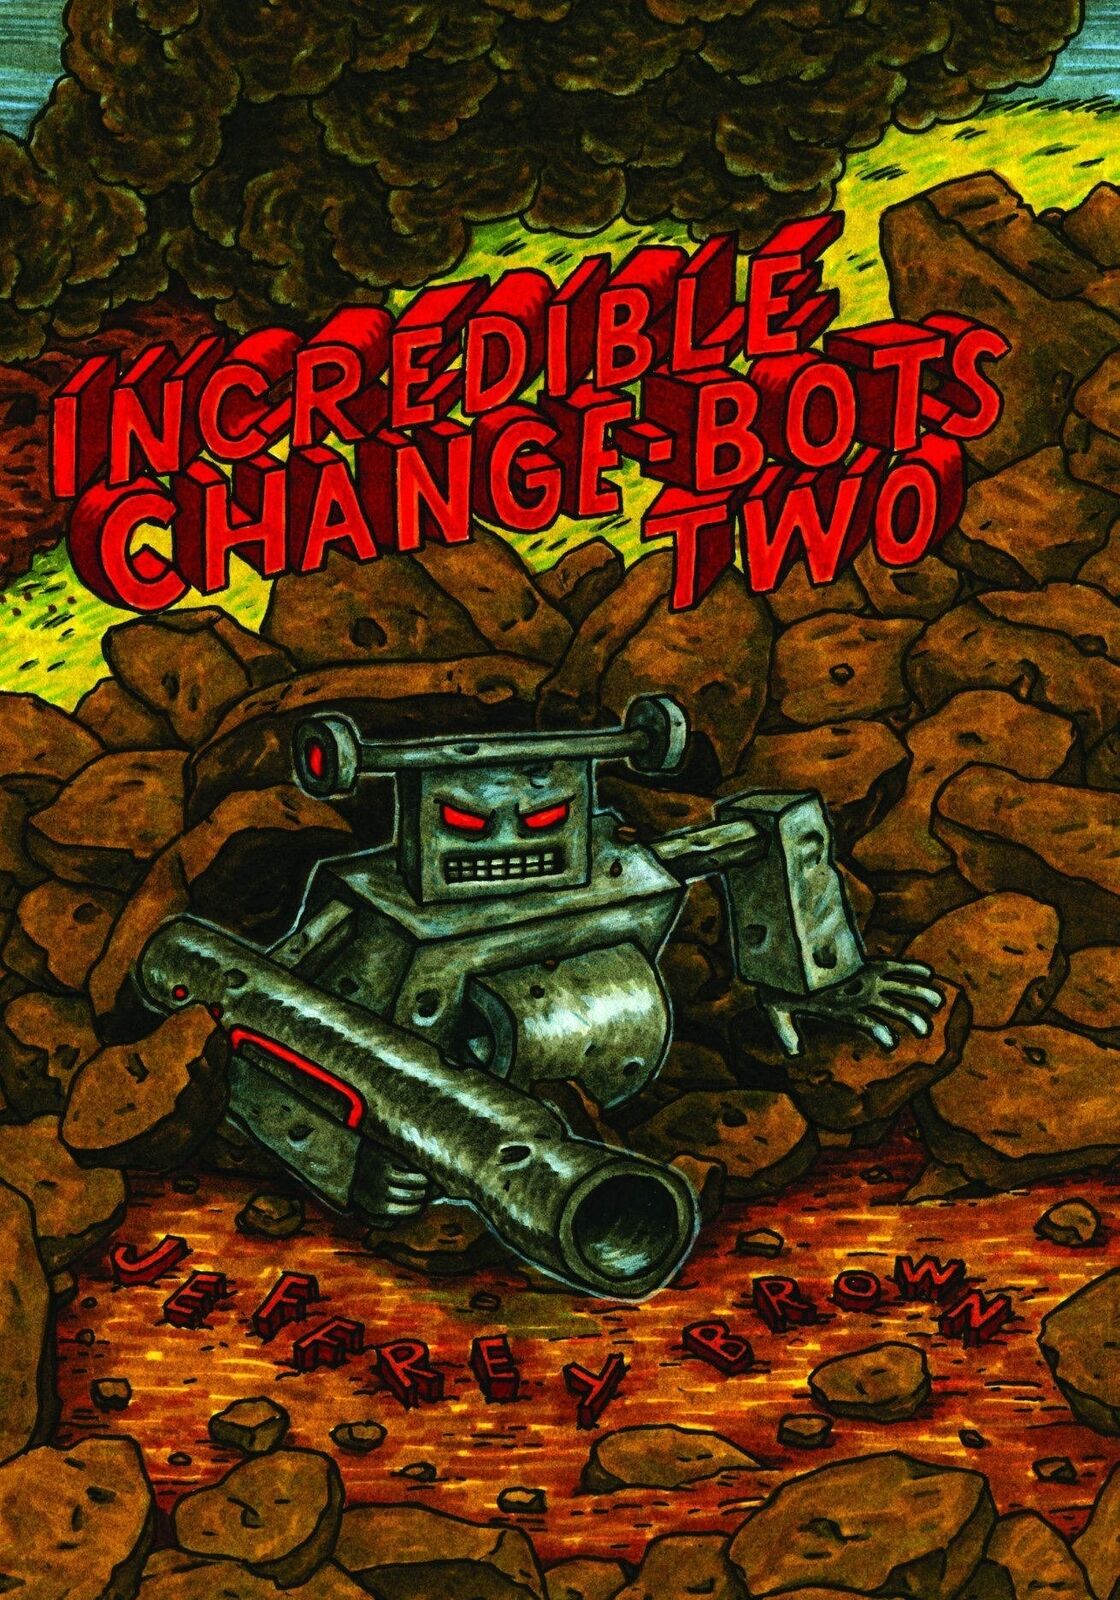 Jeffrey Brown Incredible Change-Bots Two (Paperback) Incredible Change-Bots